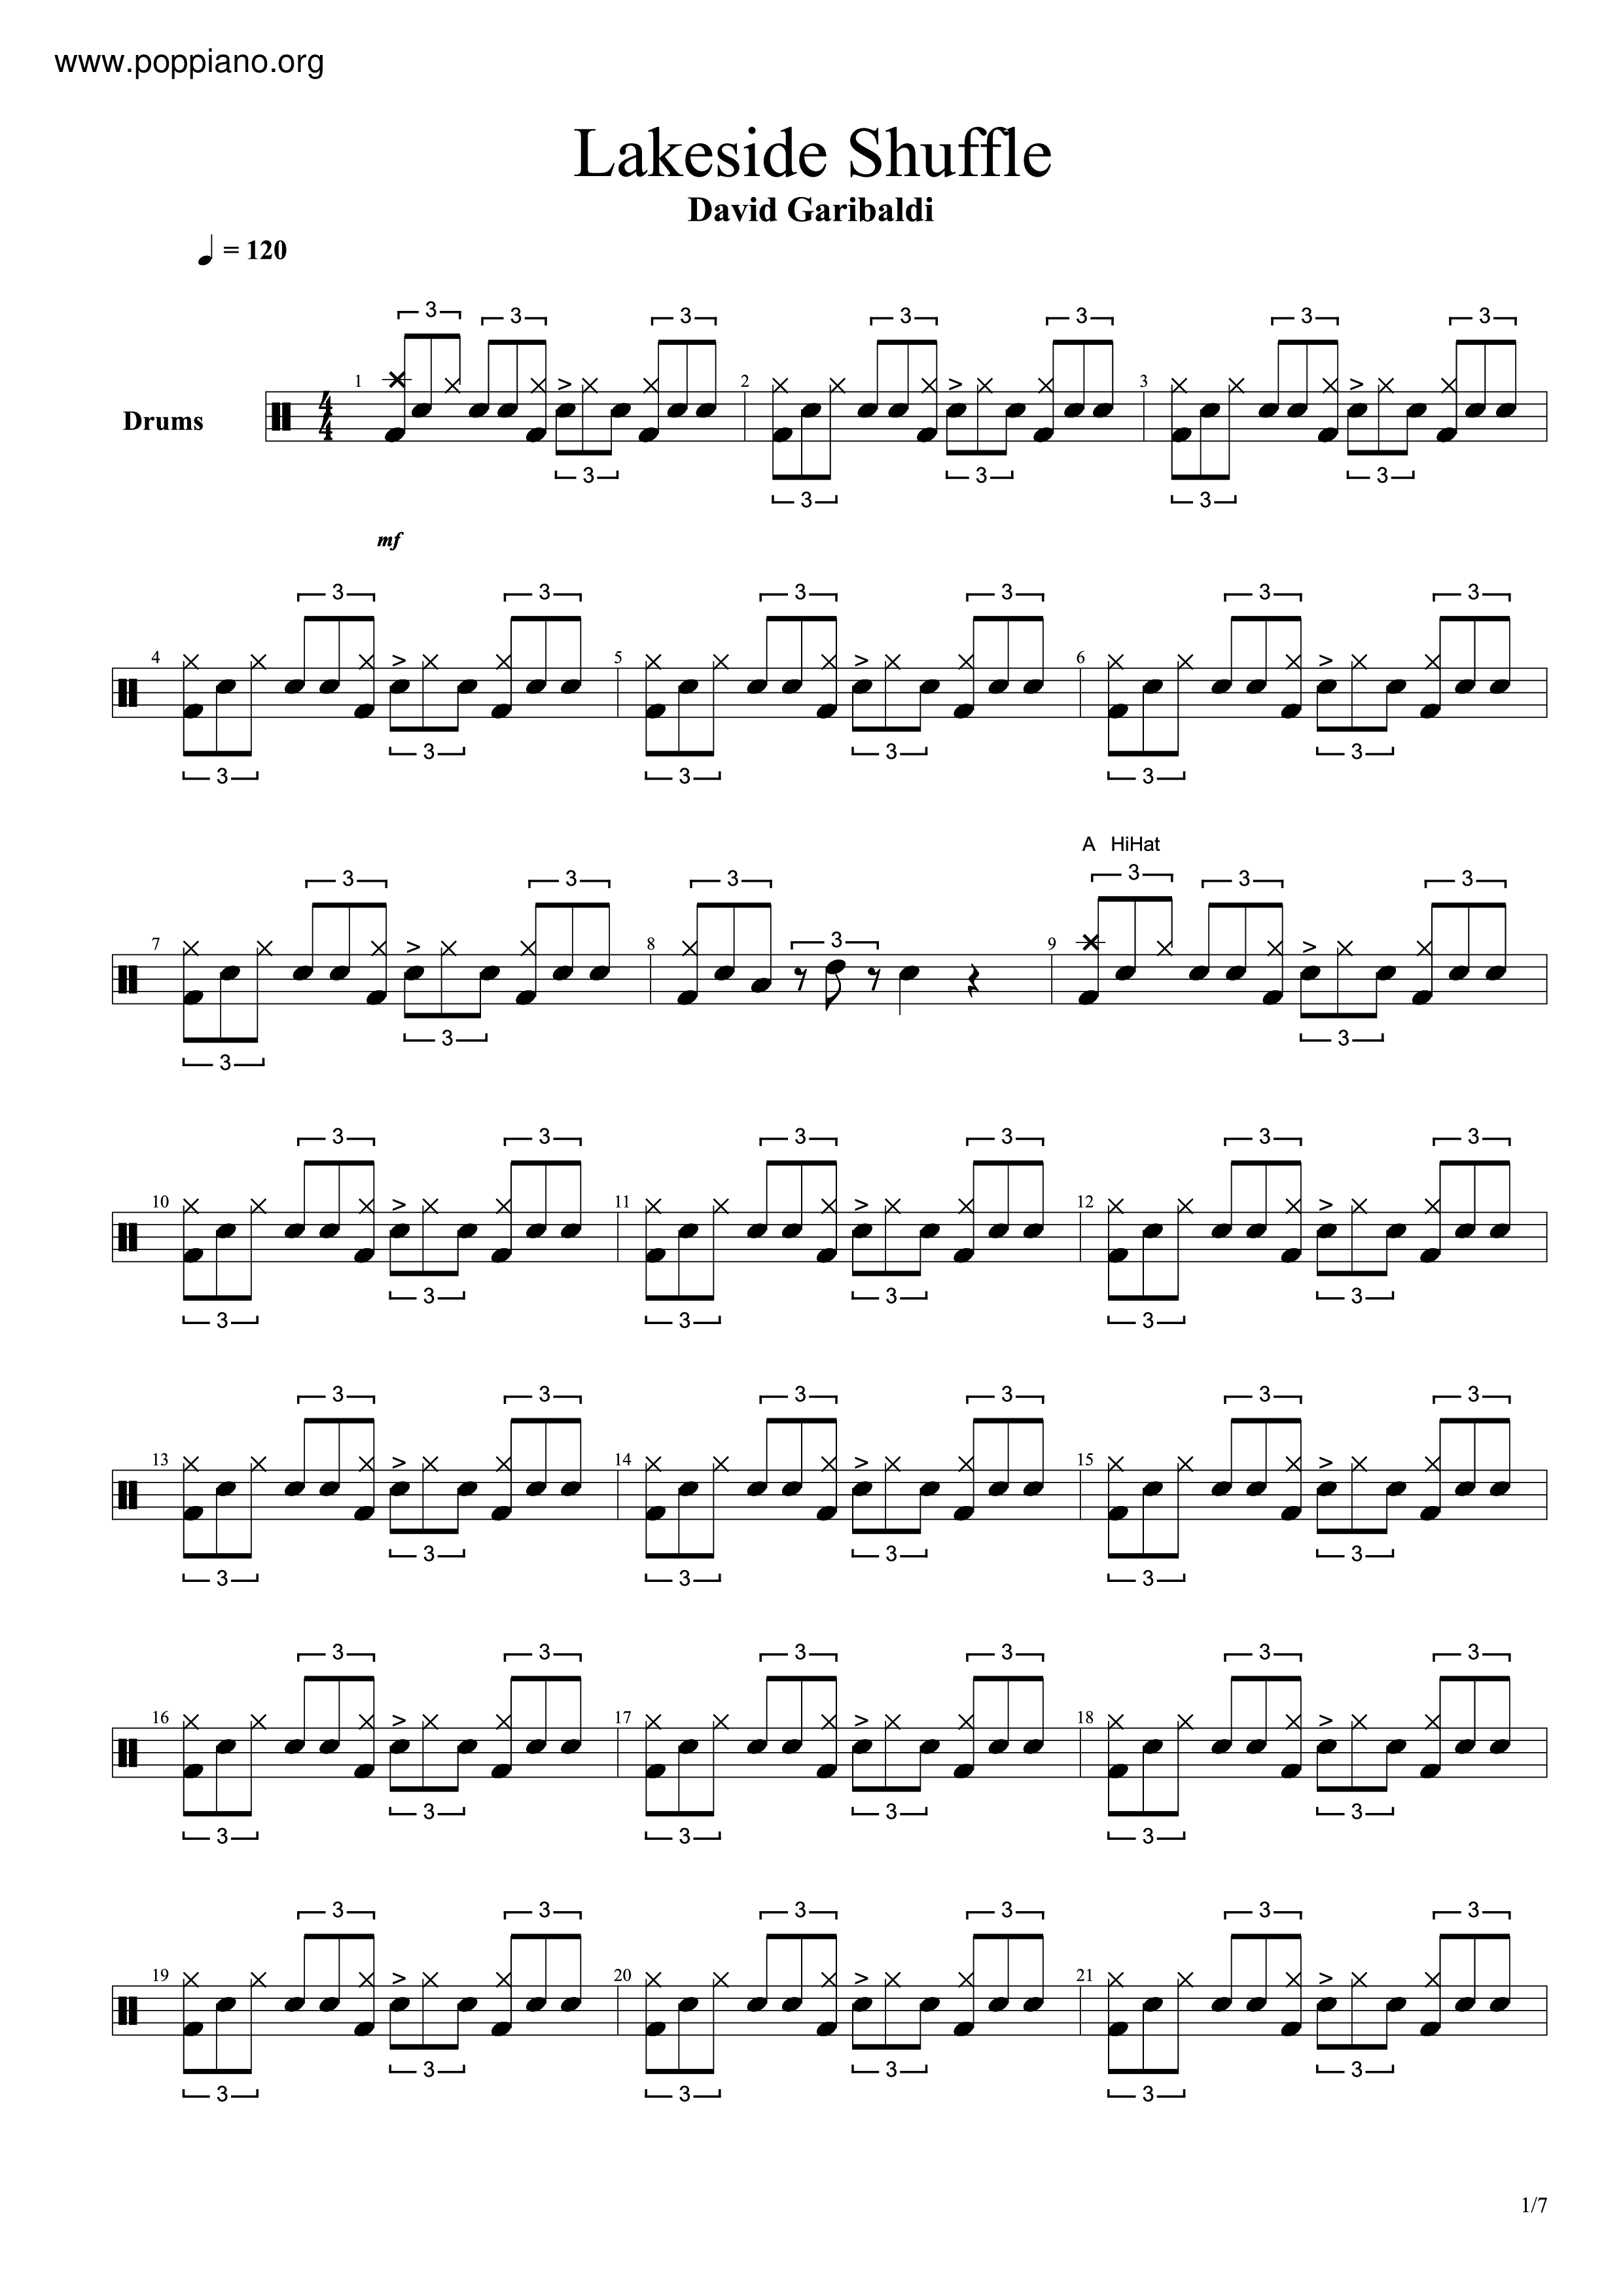 Lakeside Shuffle Score